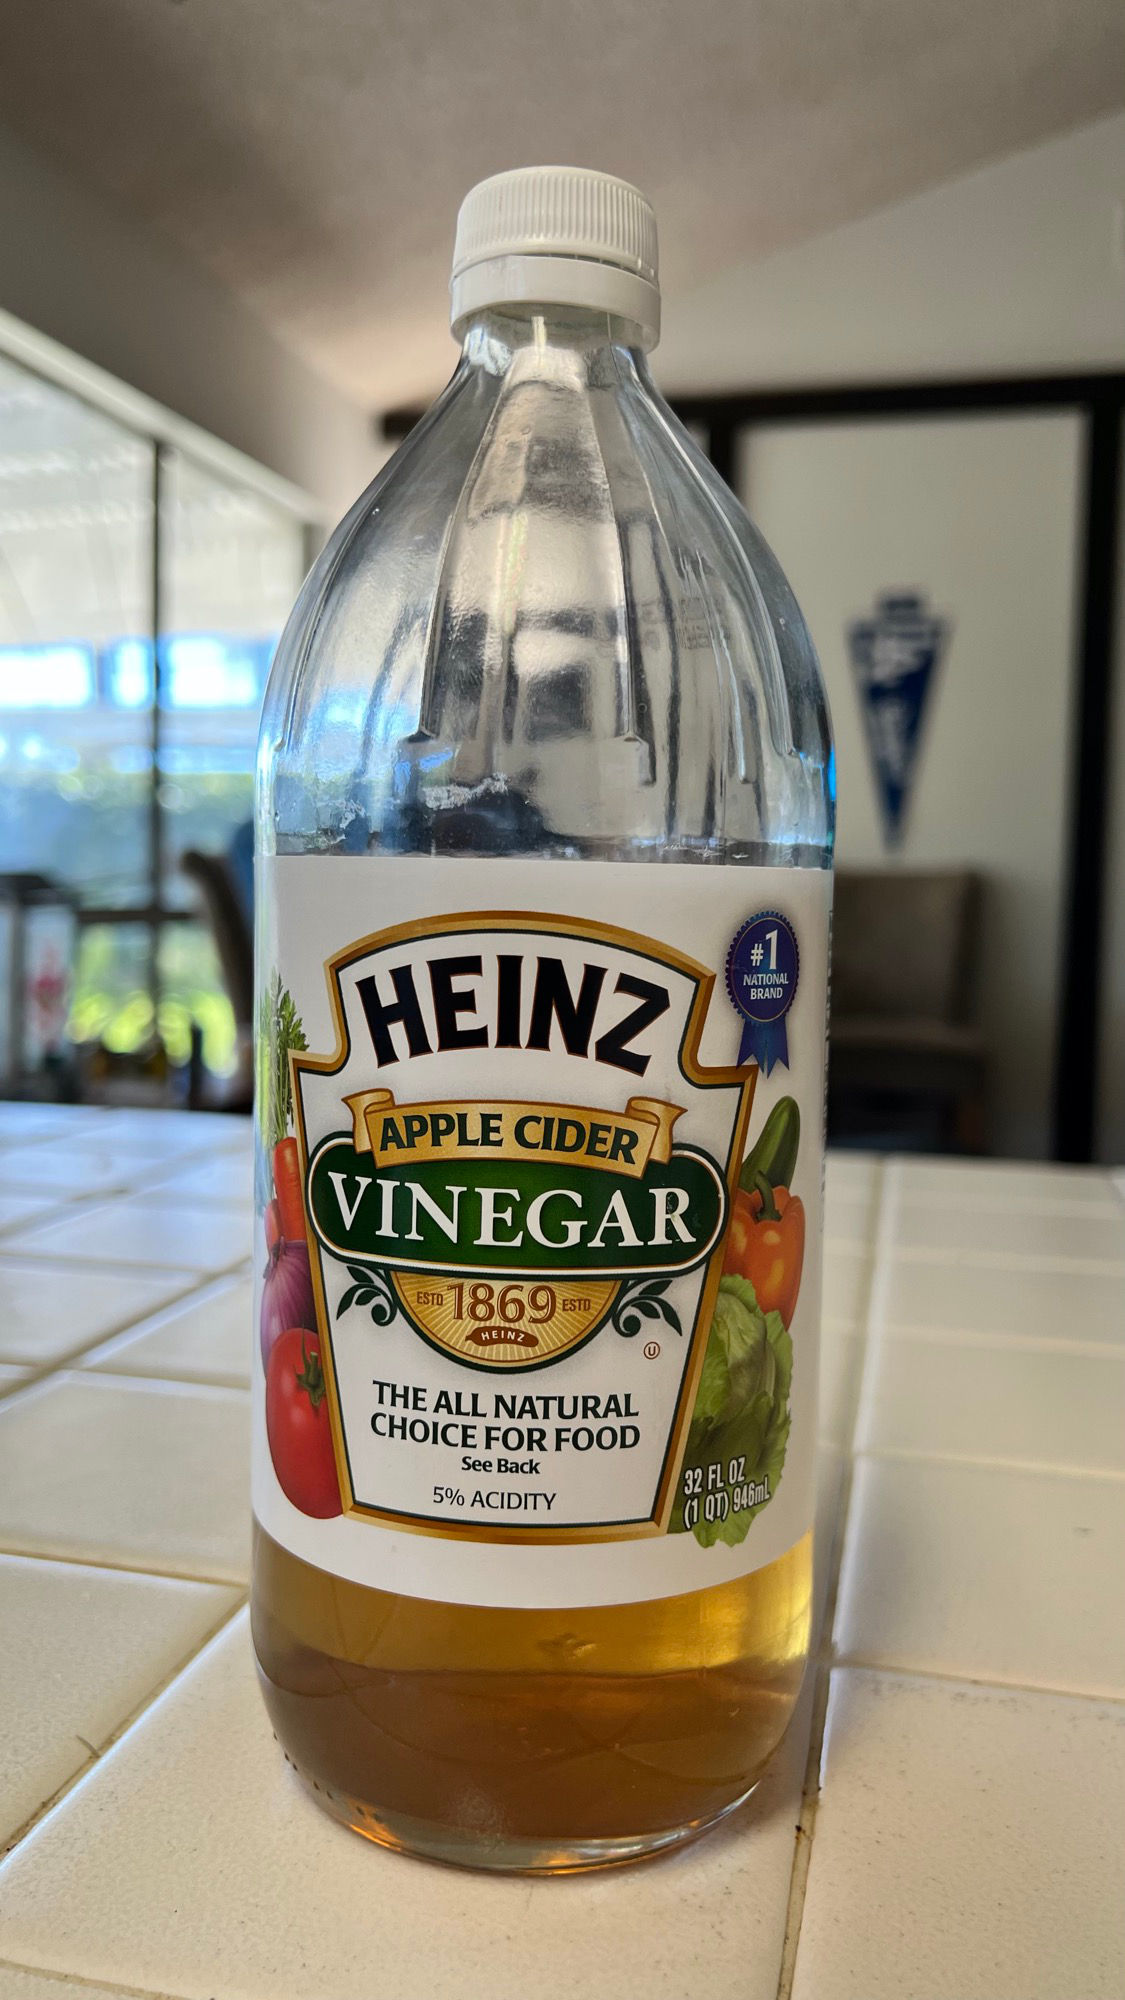 Apple Cider Vinegar Heinz